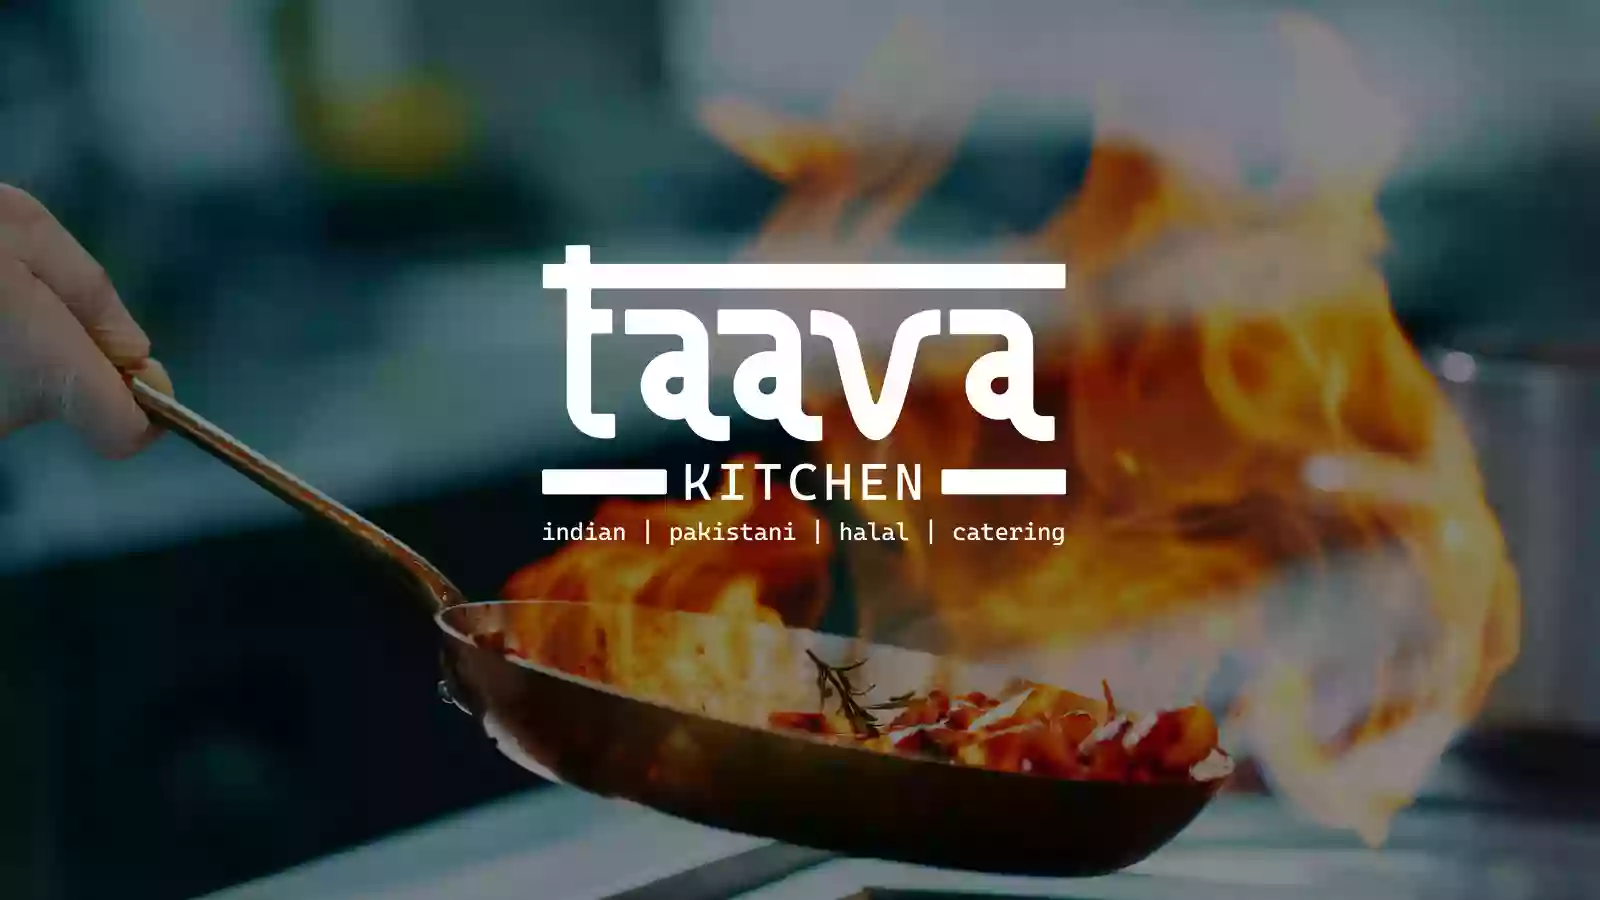 Taava Kitchen